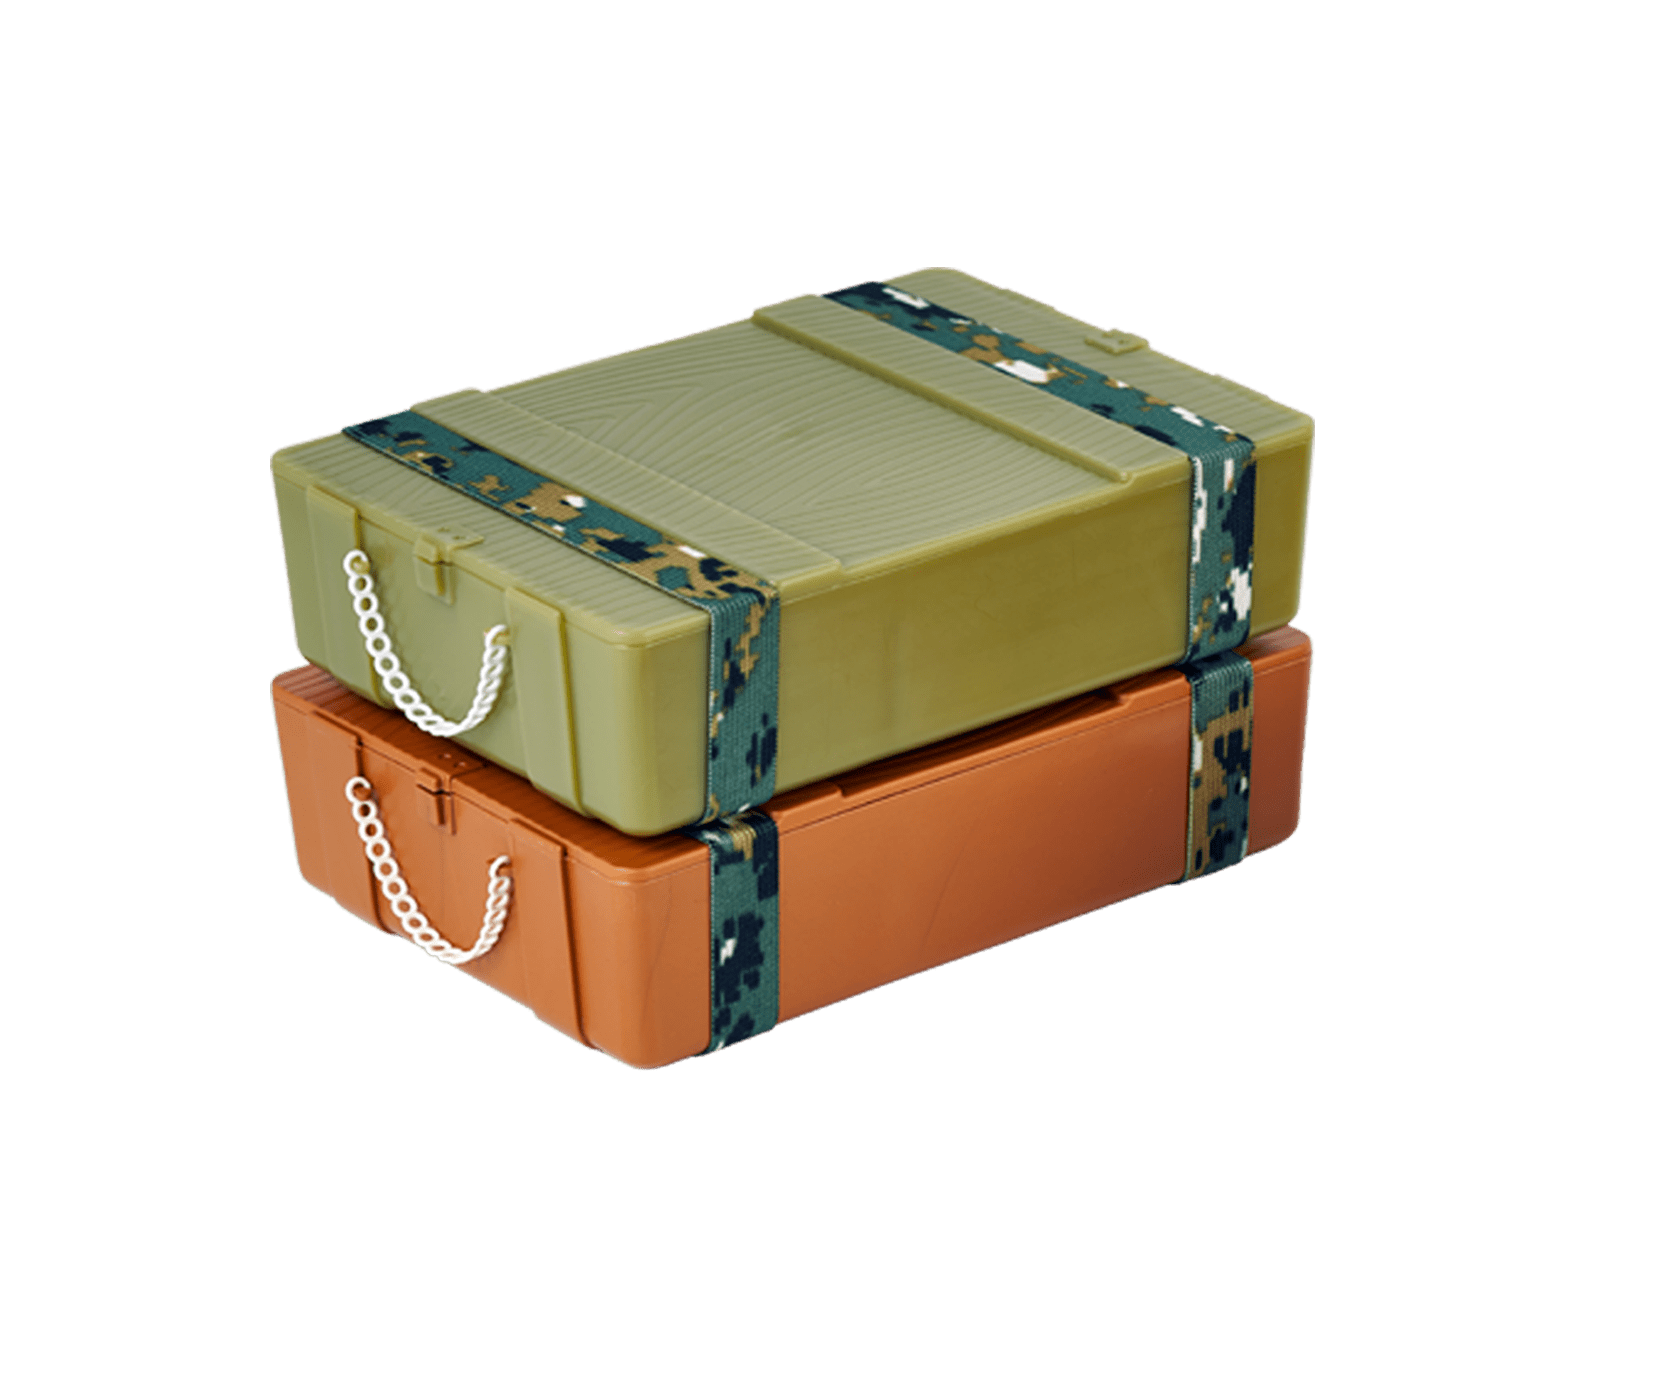 彈藥箱造型環保餐盒